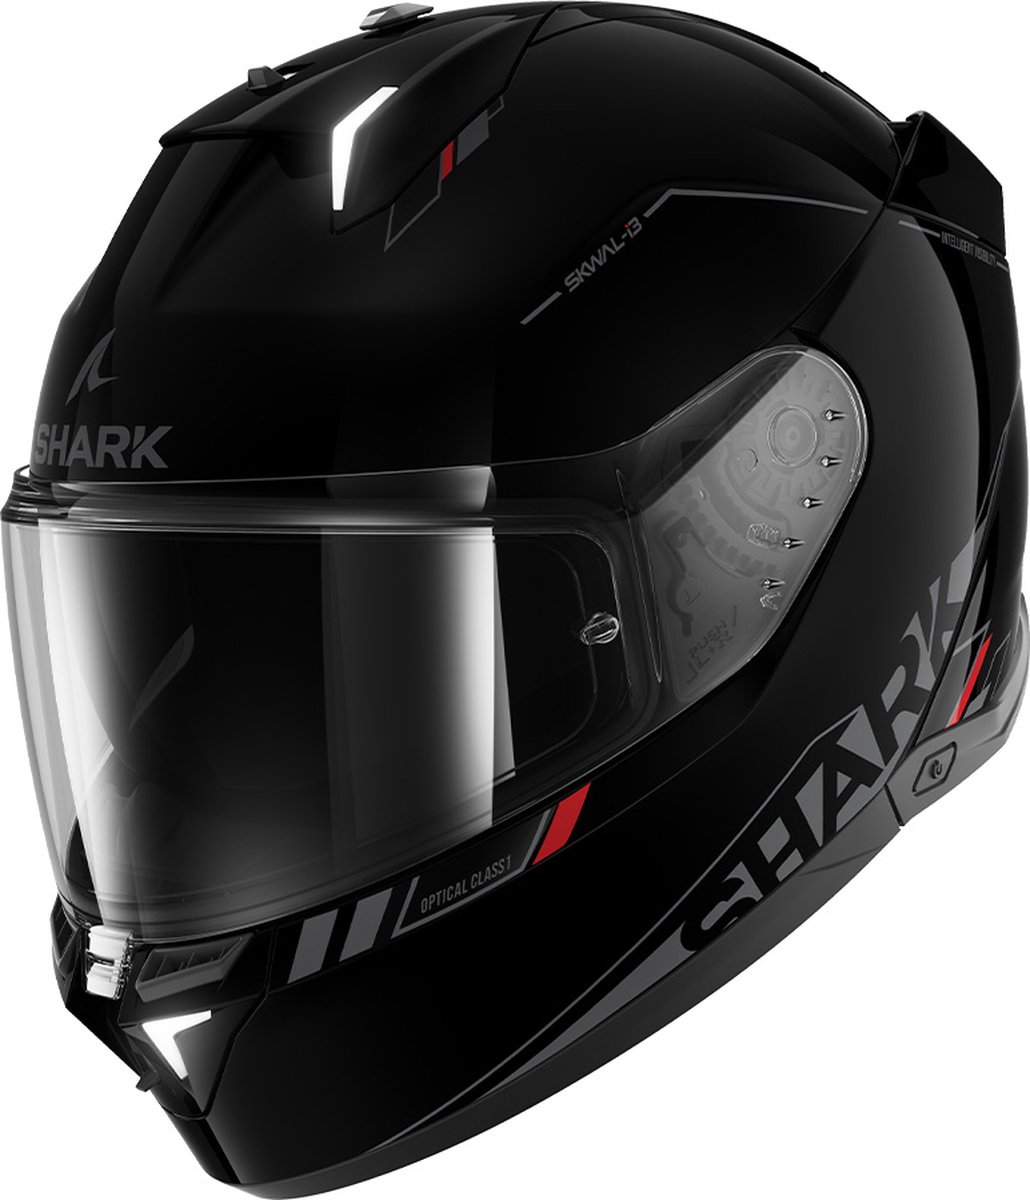 Shark Skwal i3 Blank Sp Black Anthracite Red KAR XL - Maat XL - Helm